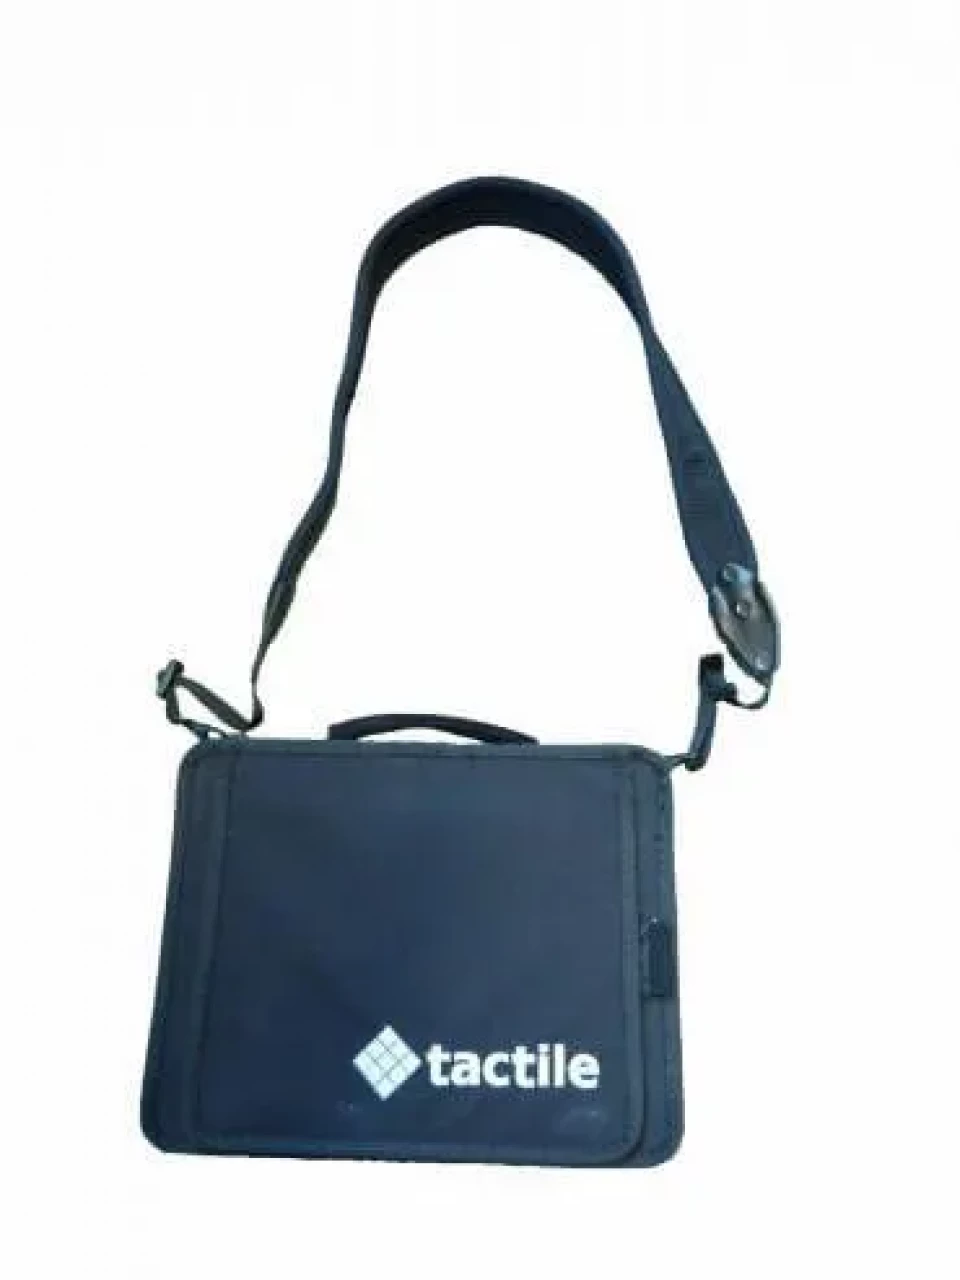 Svart bärväska med tactile logga för tactile tablets